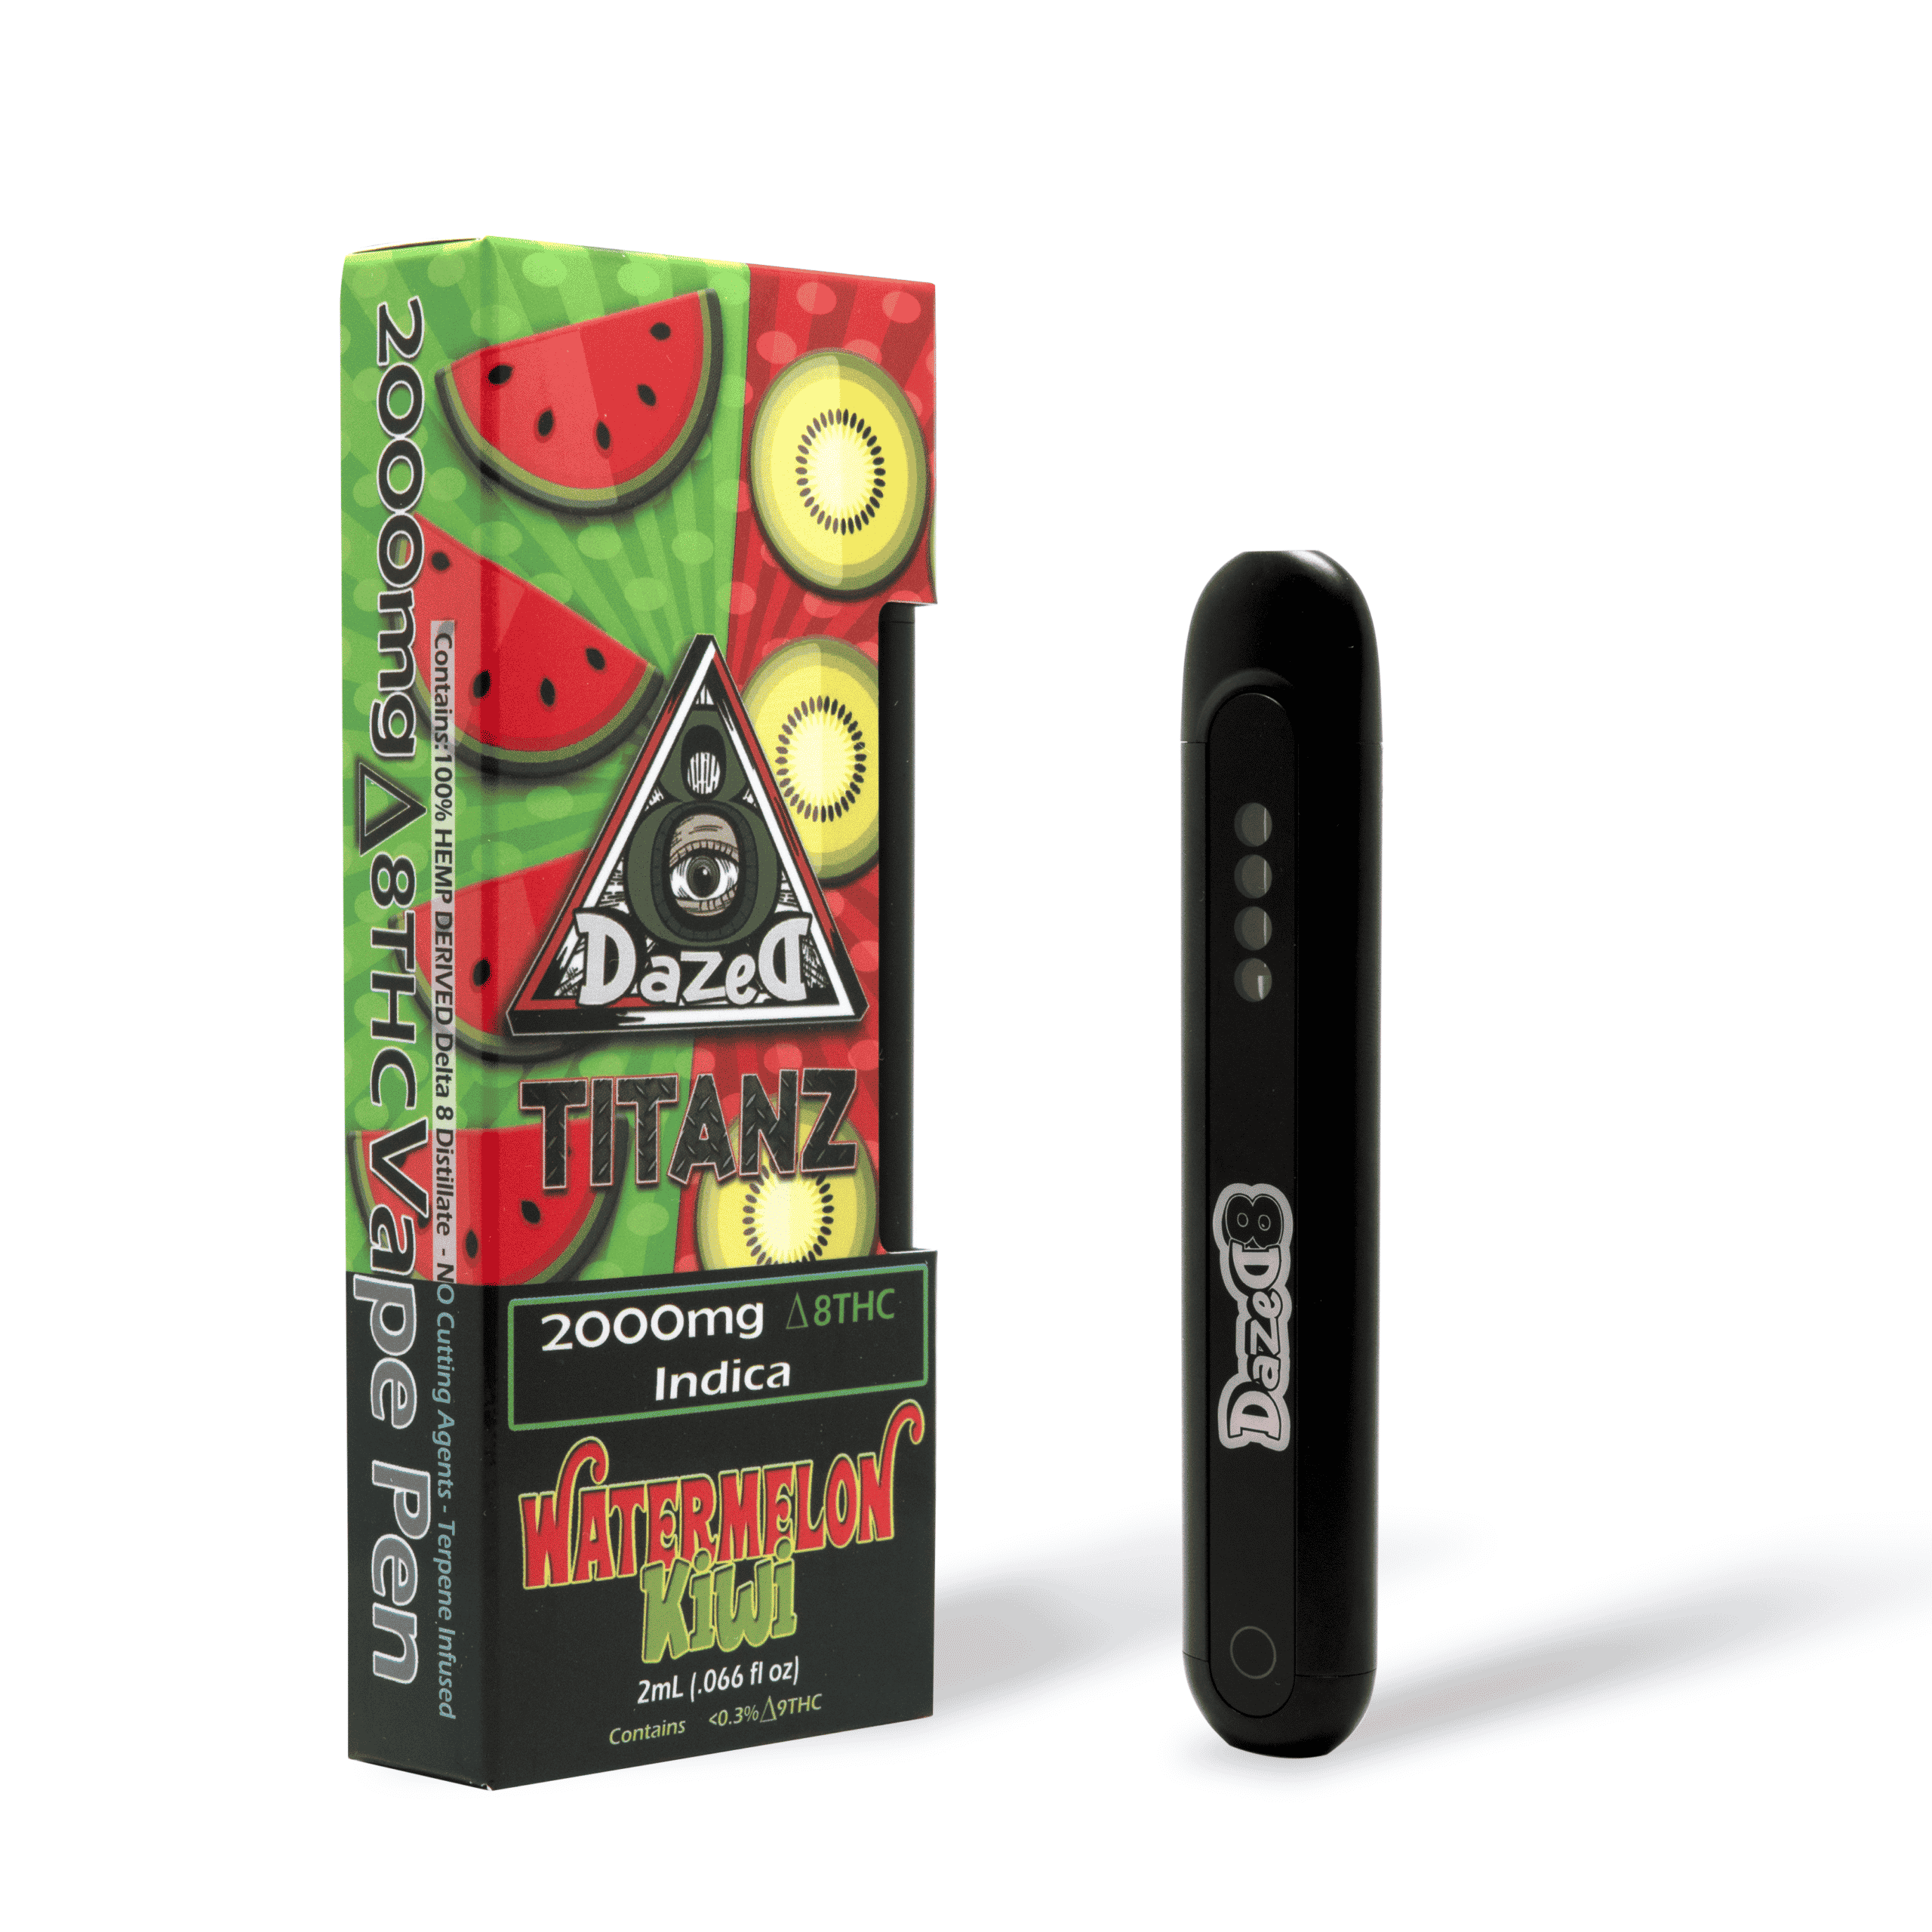 DazeD8 Watermelon Kiwi Delta 8 Disposable (2g) Best Price